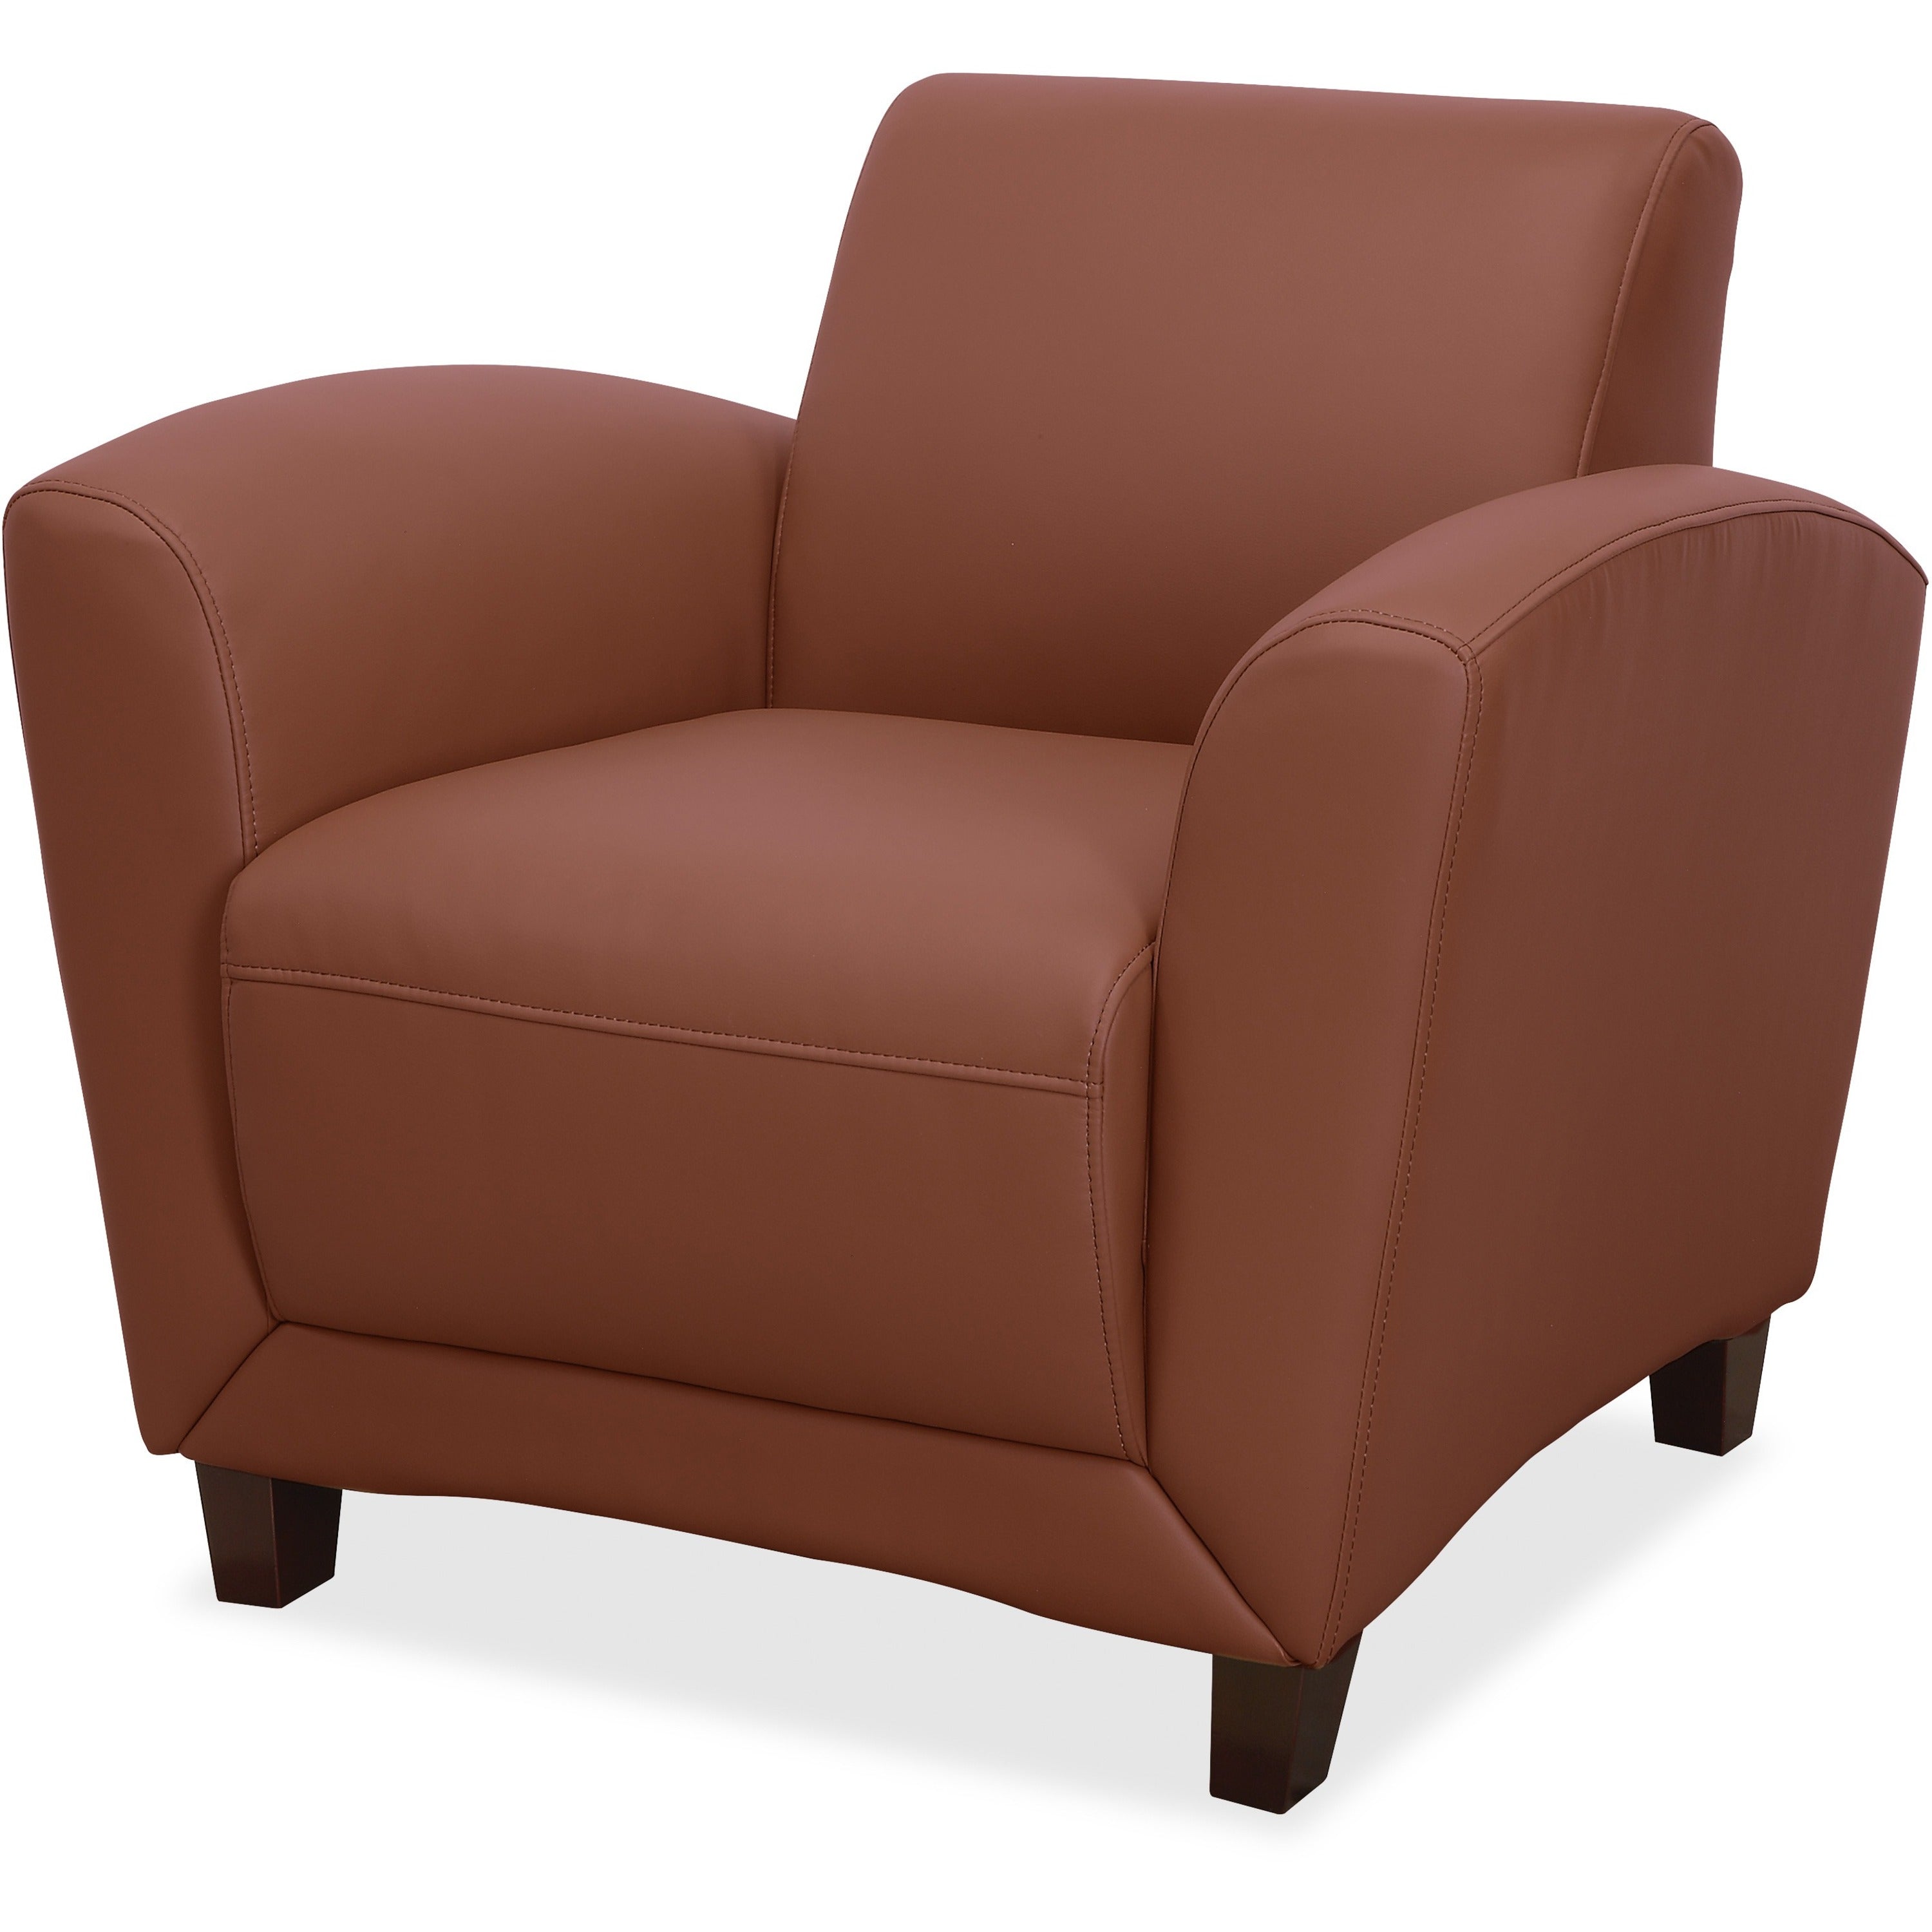 lorell-accession-club-chair-four-legged-base-tan-bonded-leather-armrest-1-each_llr68948 - 1